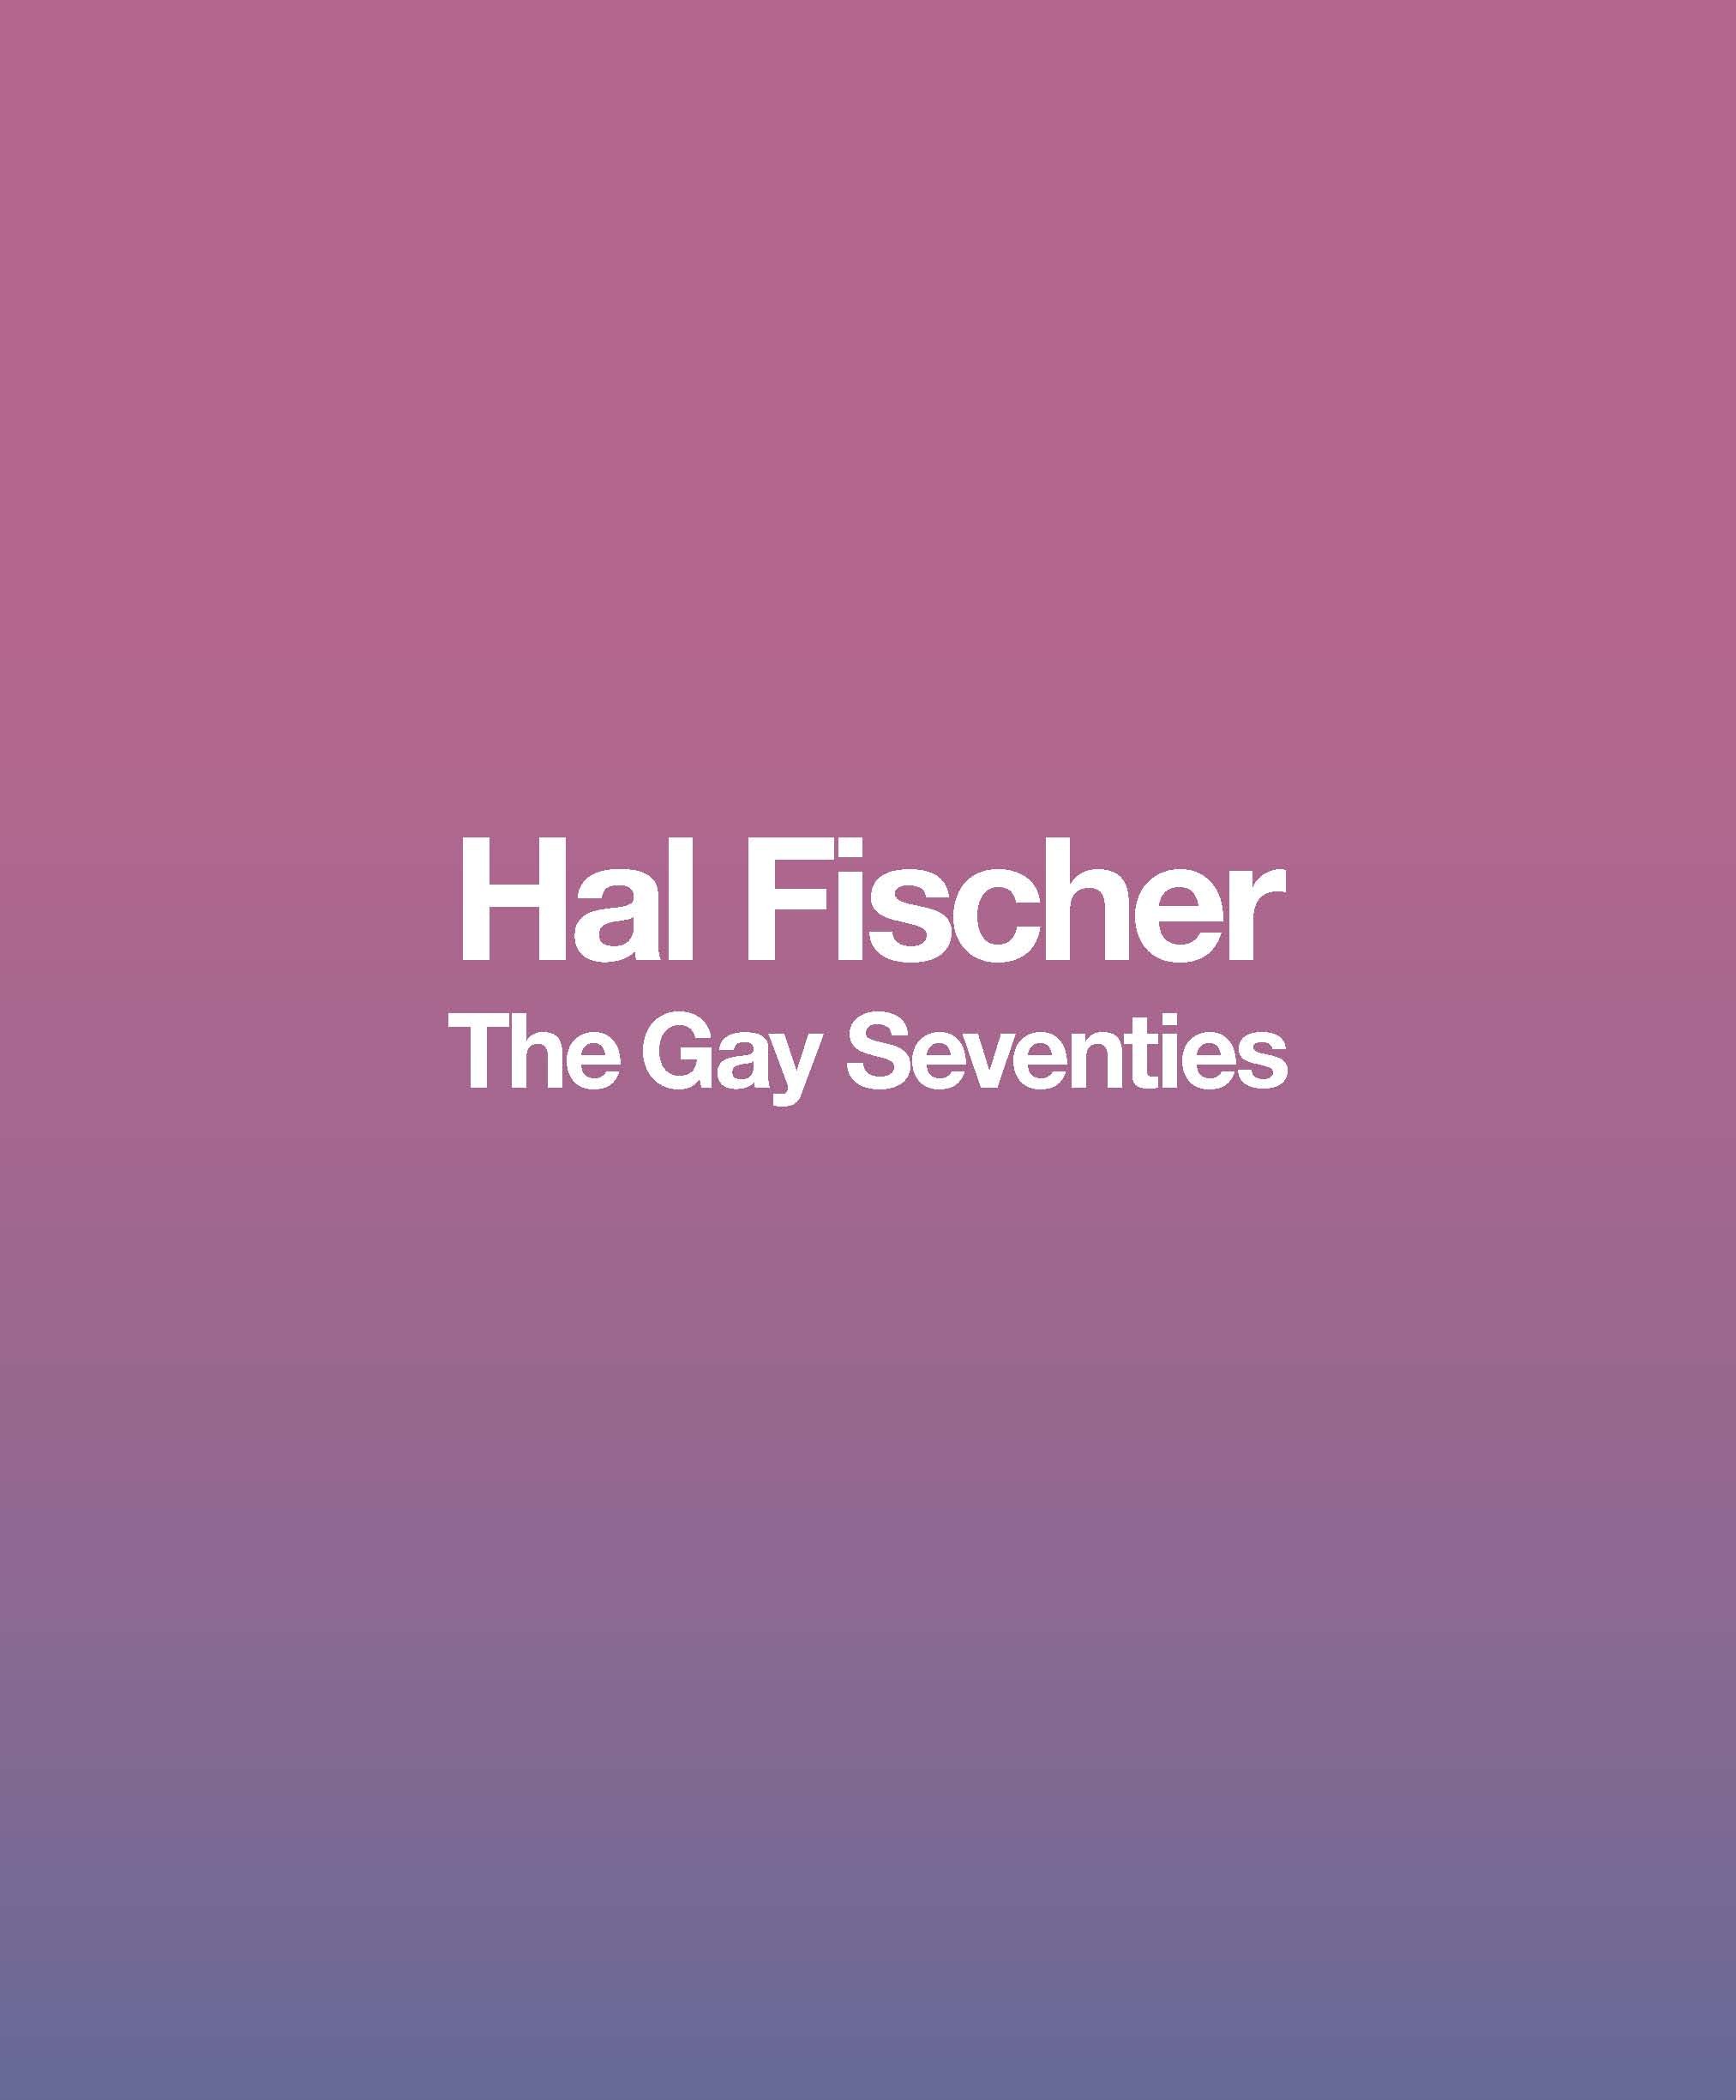 HF-Gay Seventies Cover.jpg